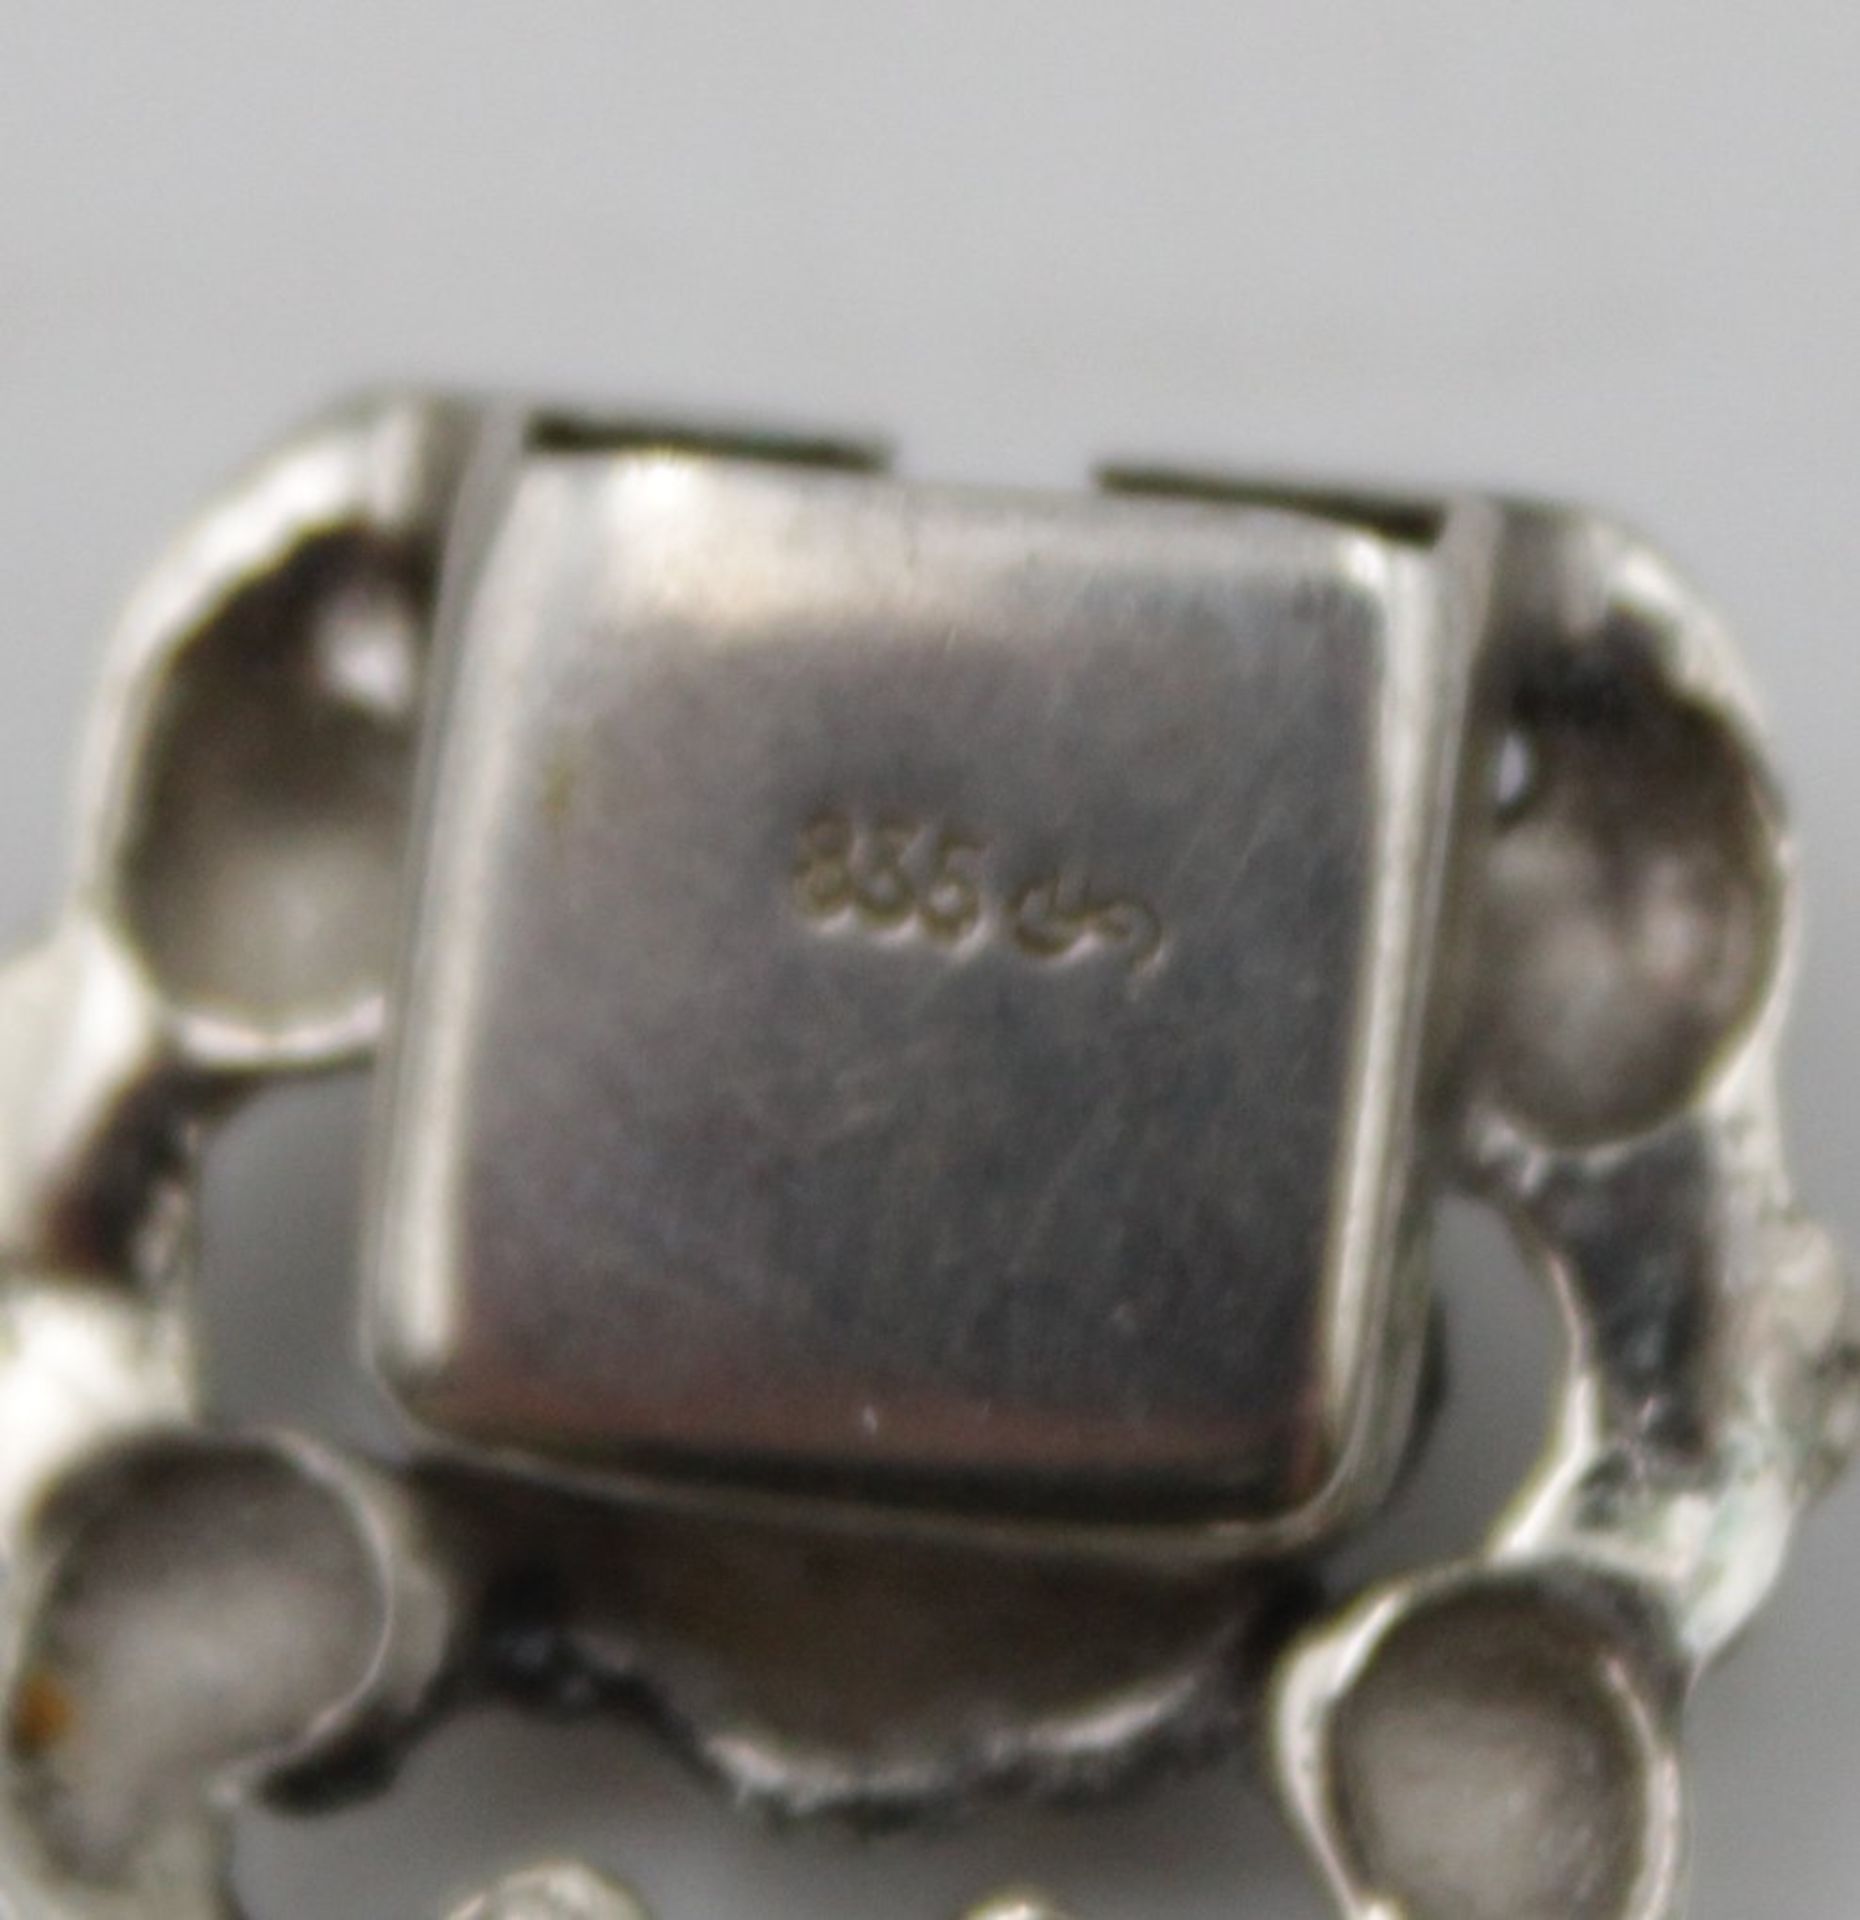 Damen-Armbanduhr, Kasper, 835er Silber, Kronenaufzug, Werk läuft, zus. 31gr. - Bild 6 aus 6